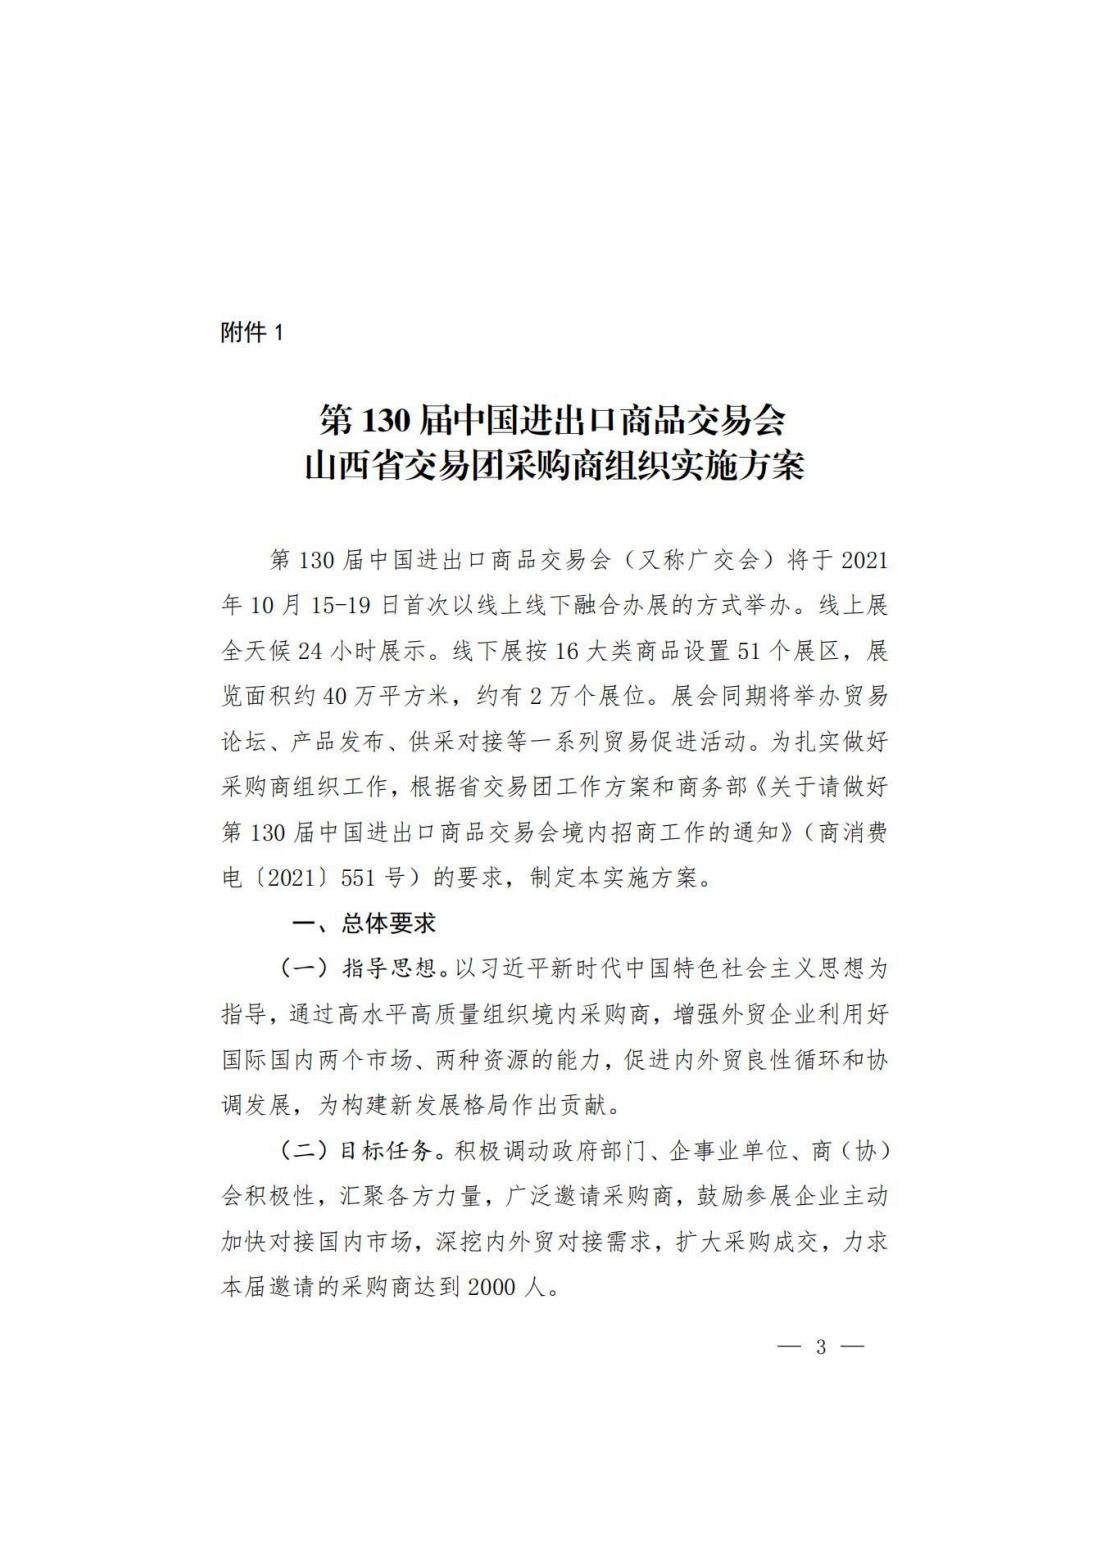 关于转发商务厅《第 130 届中国进出口商品交易会山西省交易团采购商组织实施方案》的通知(图4)